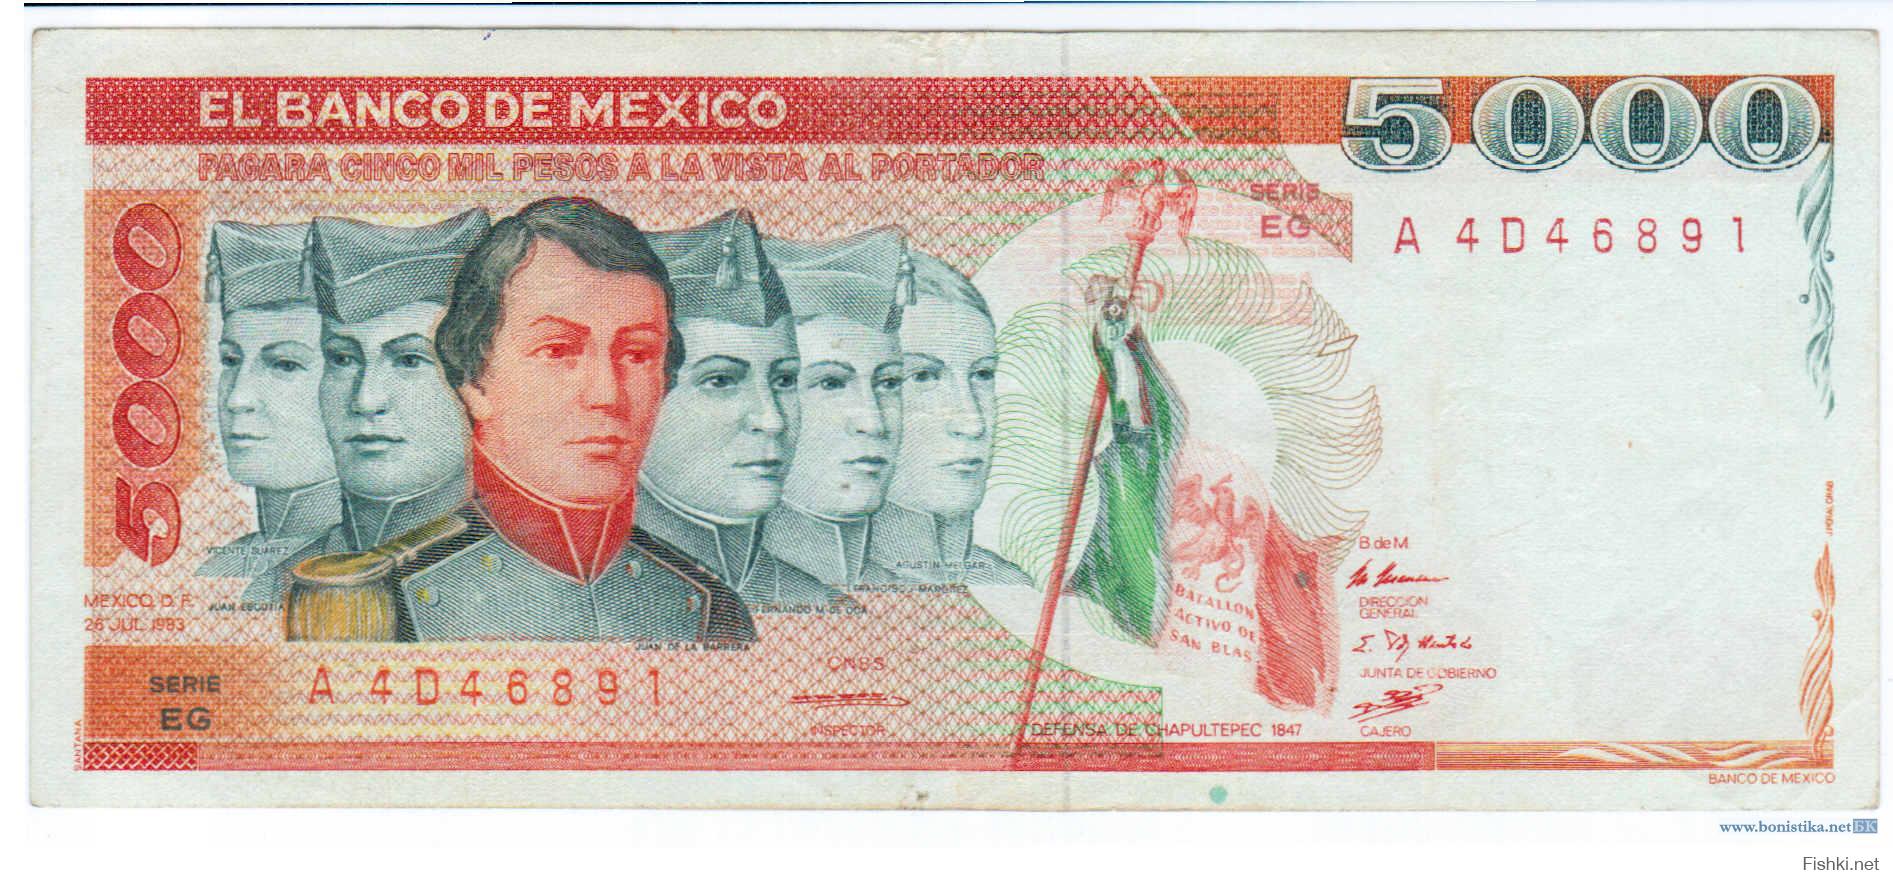 Получить бесплатно деньги мексики